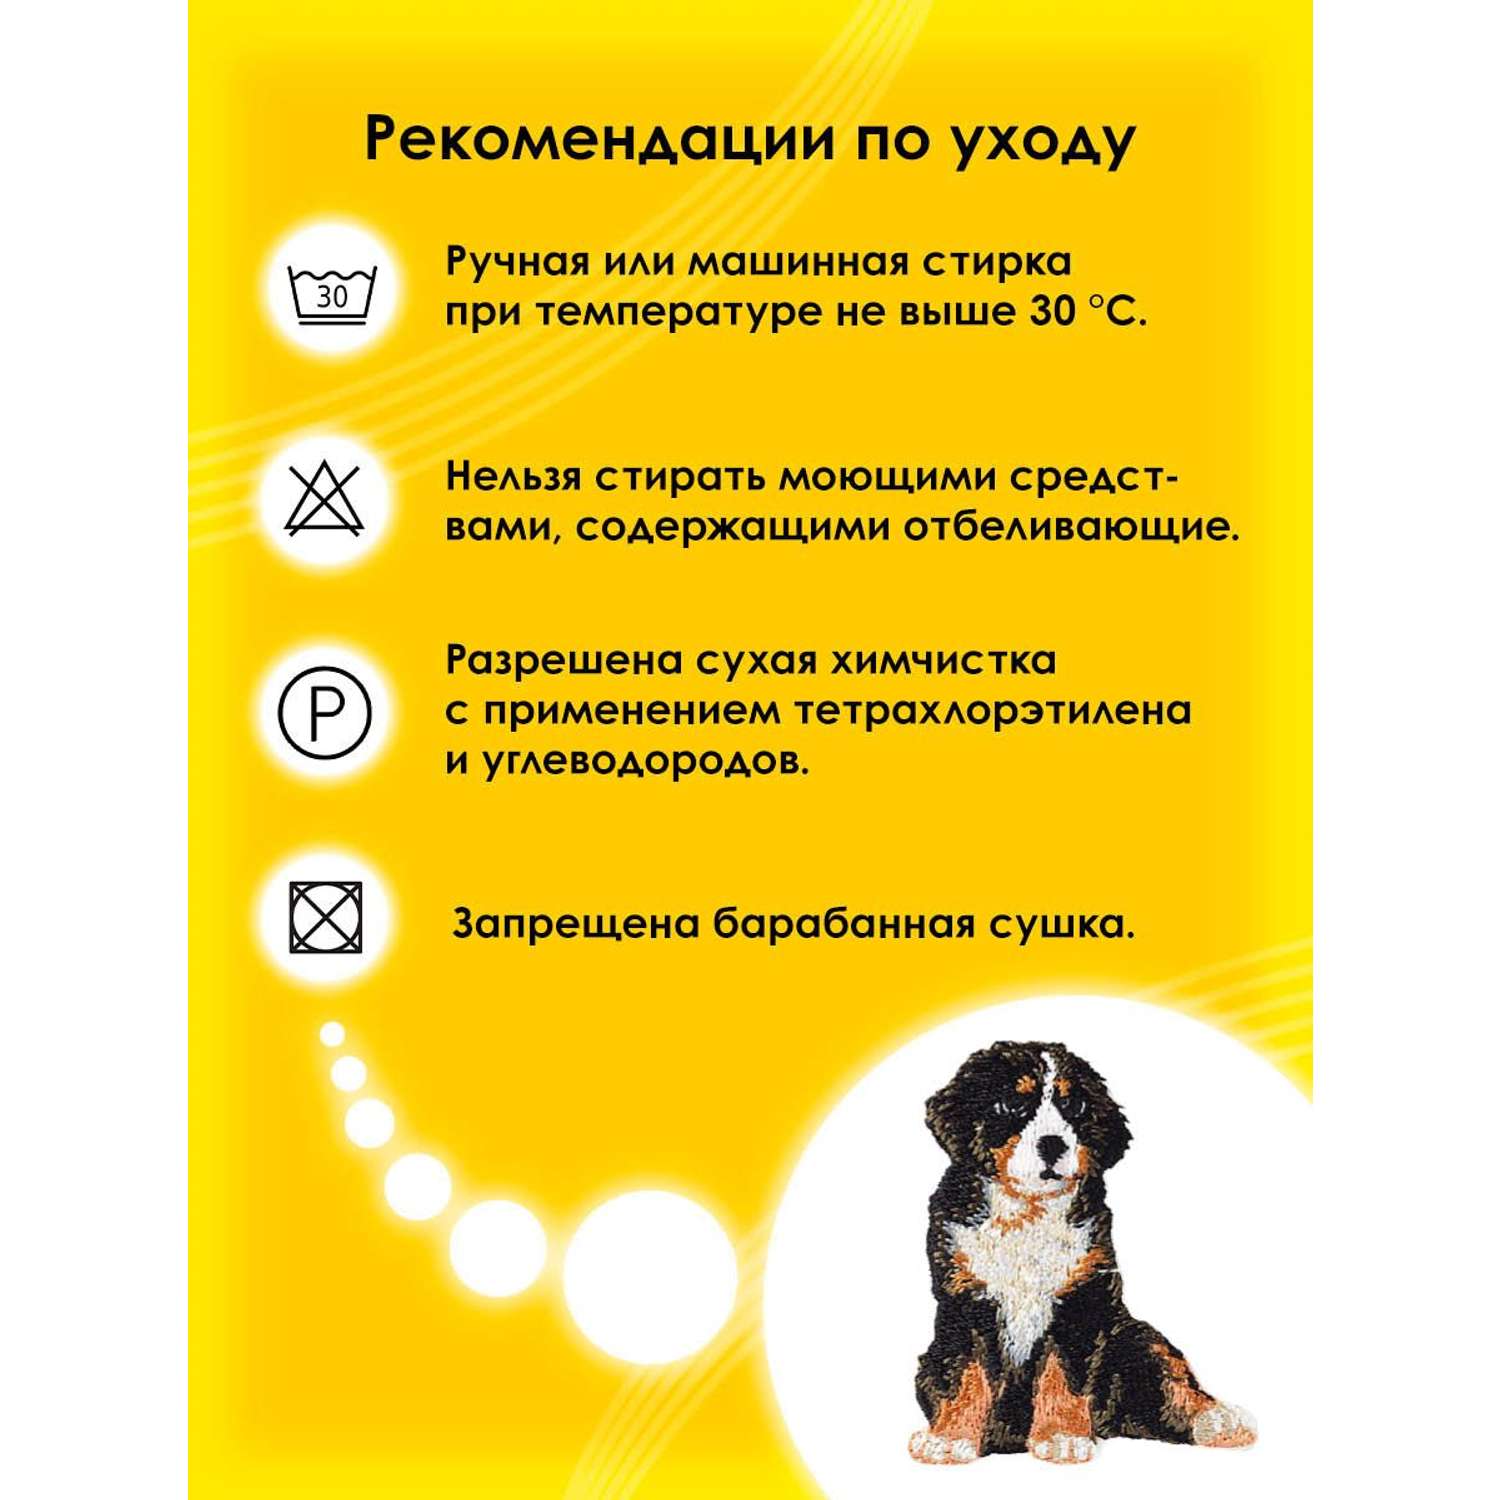 Термоаппликация Prym нашивка Альпийская собака 5.5х4.4 см для ремонта и украшения одежды 925578 - фото 5